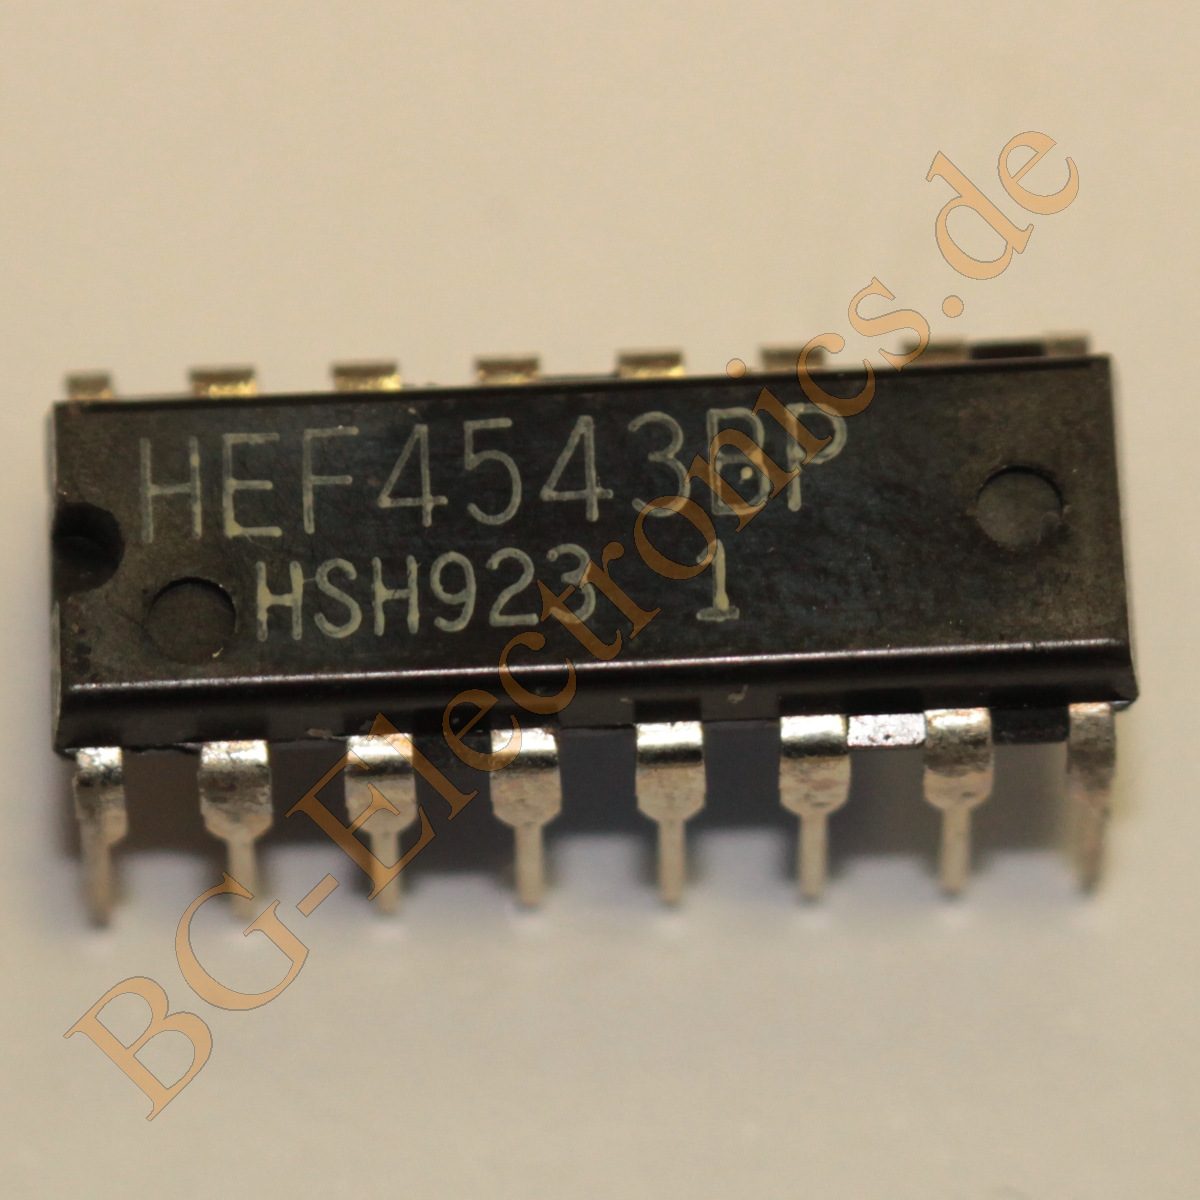 HEF4543BP